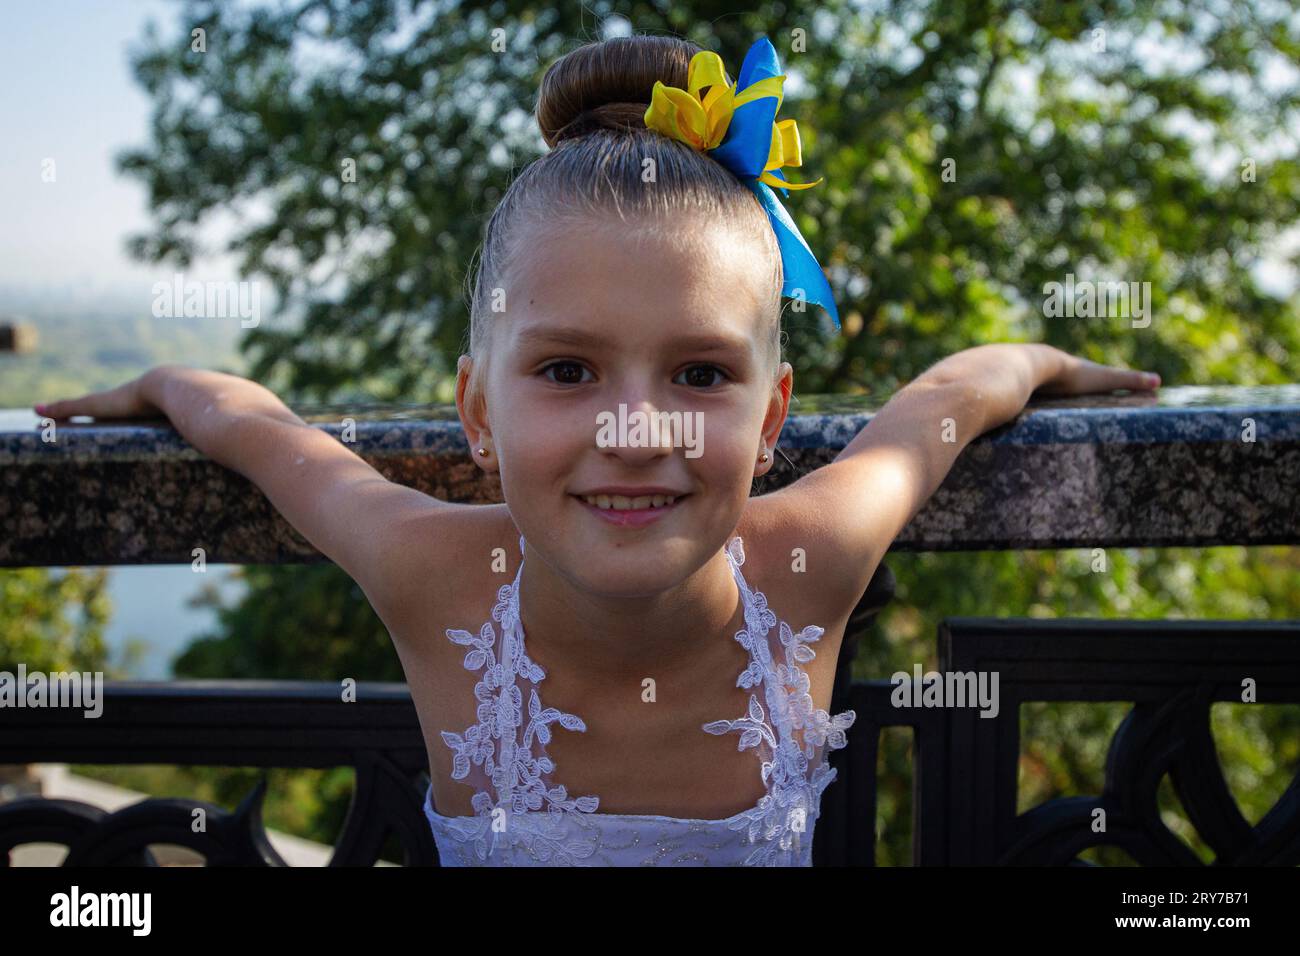 KIEW, UKRAINE - 29. SEPTEMBER 2023 - Ein Mädchen in einem Ballkleid mit blauen und gelben Bändern im Haar wird vor der Zeremonie zur Verleihung der Schulter abgebildet Stockfoto